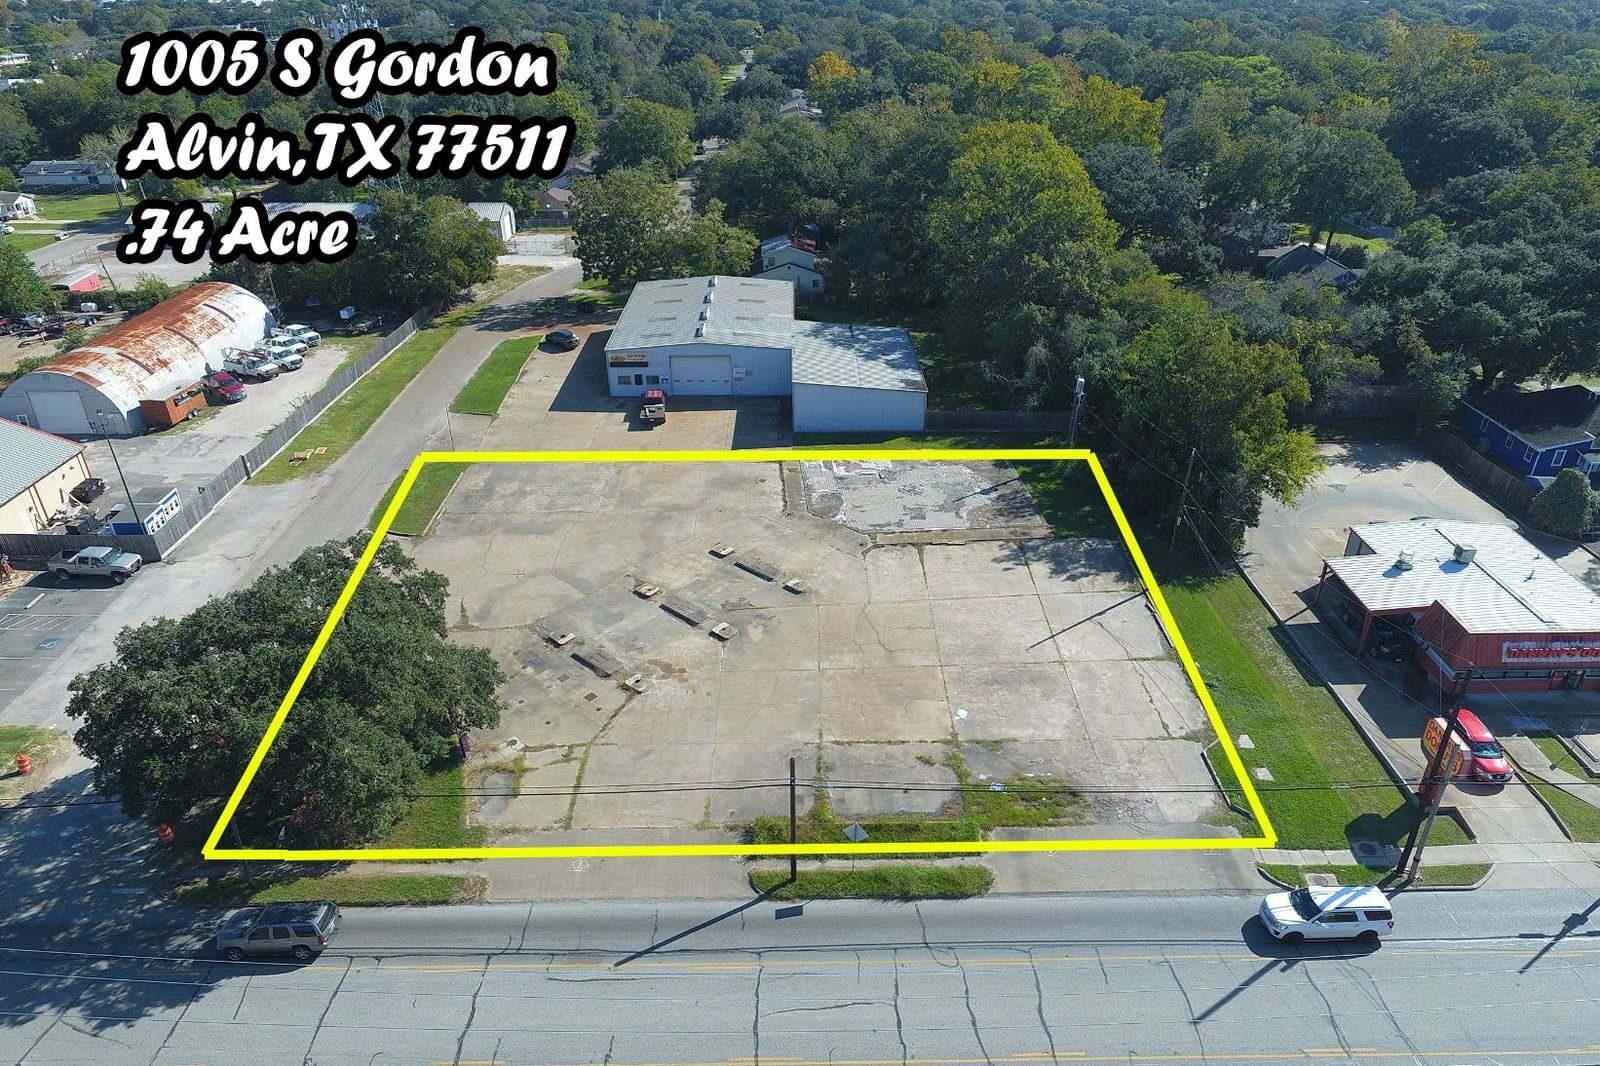 Real estate property located at 1005 Gordon, Brazoria, H T & B R R, Alvin, TX, US